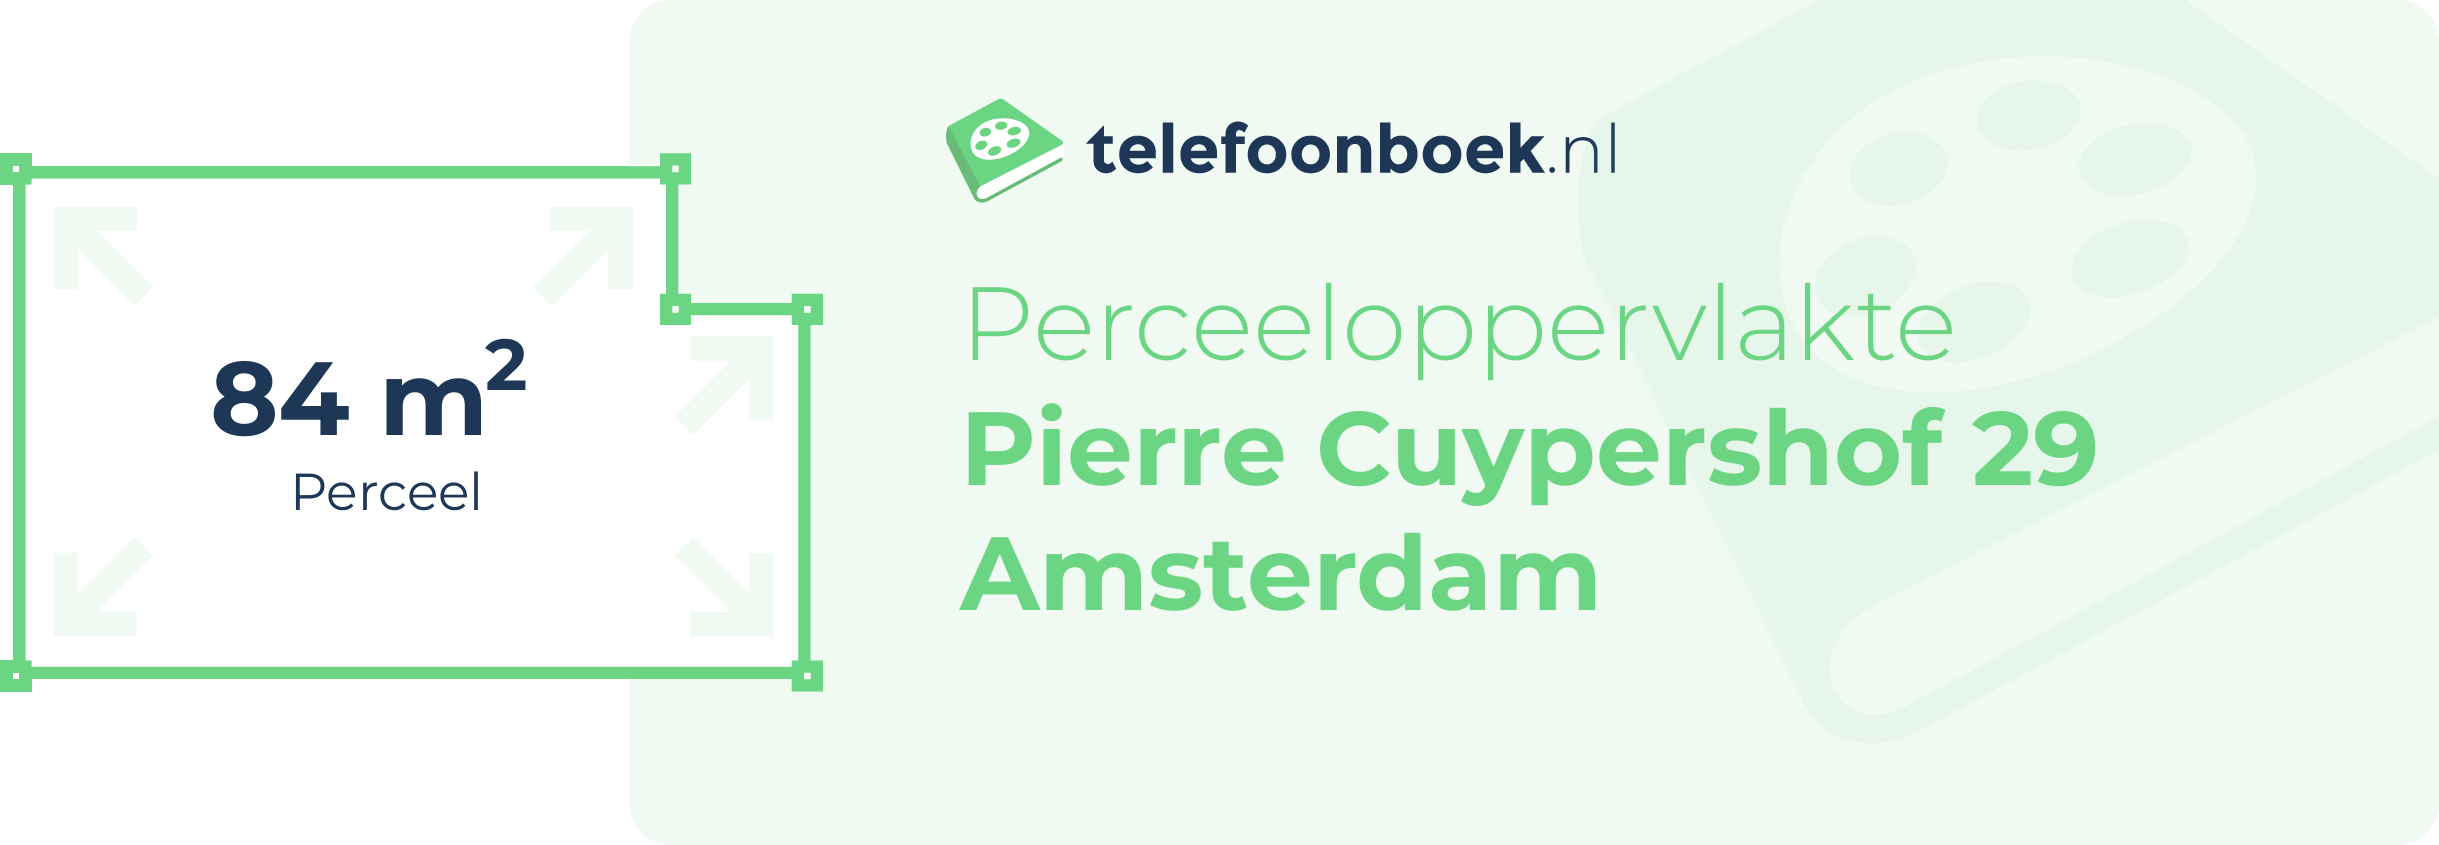 Perceeloppervlakte Pierre Cuypershof 29 Amsterdam